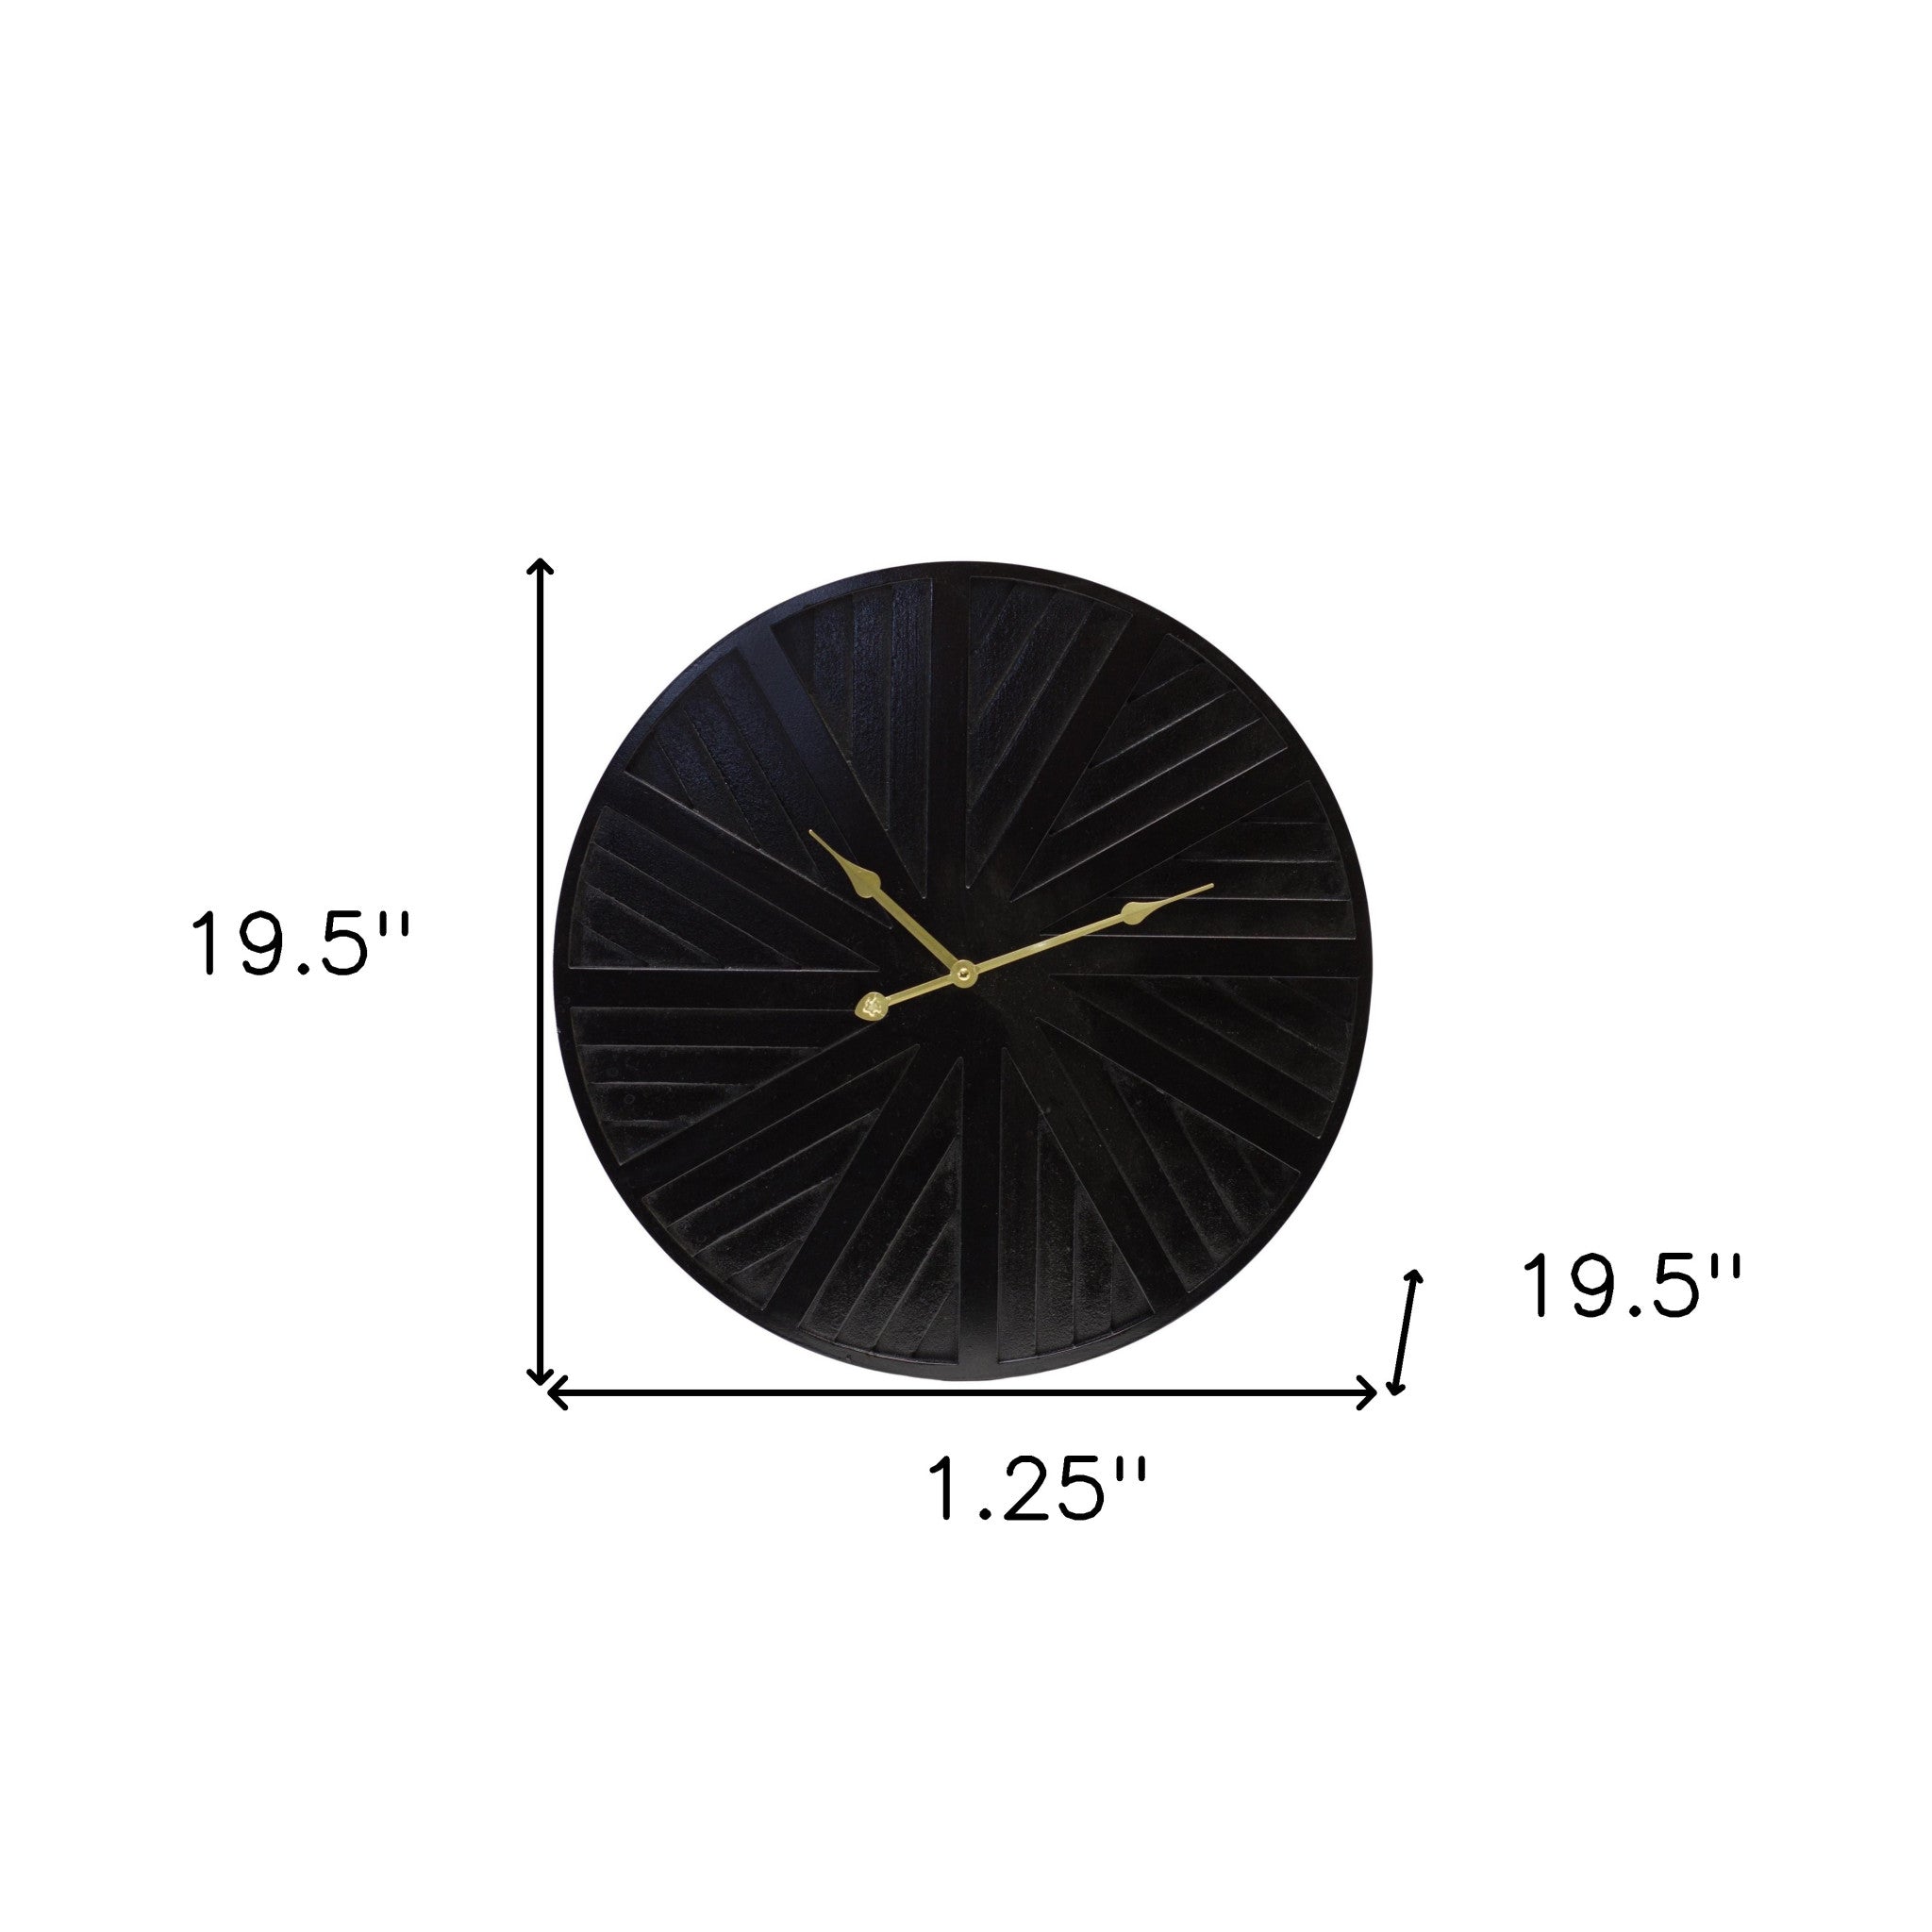 20" Circle Black Wood and Solid Wood Analog Wall Clock